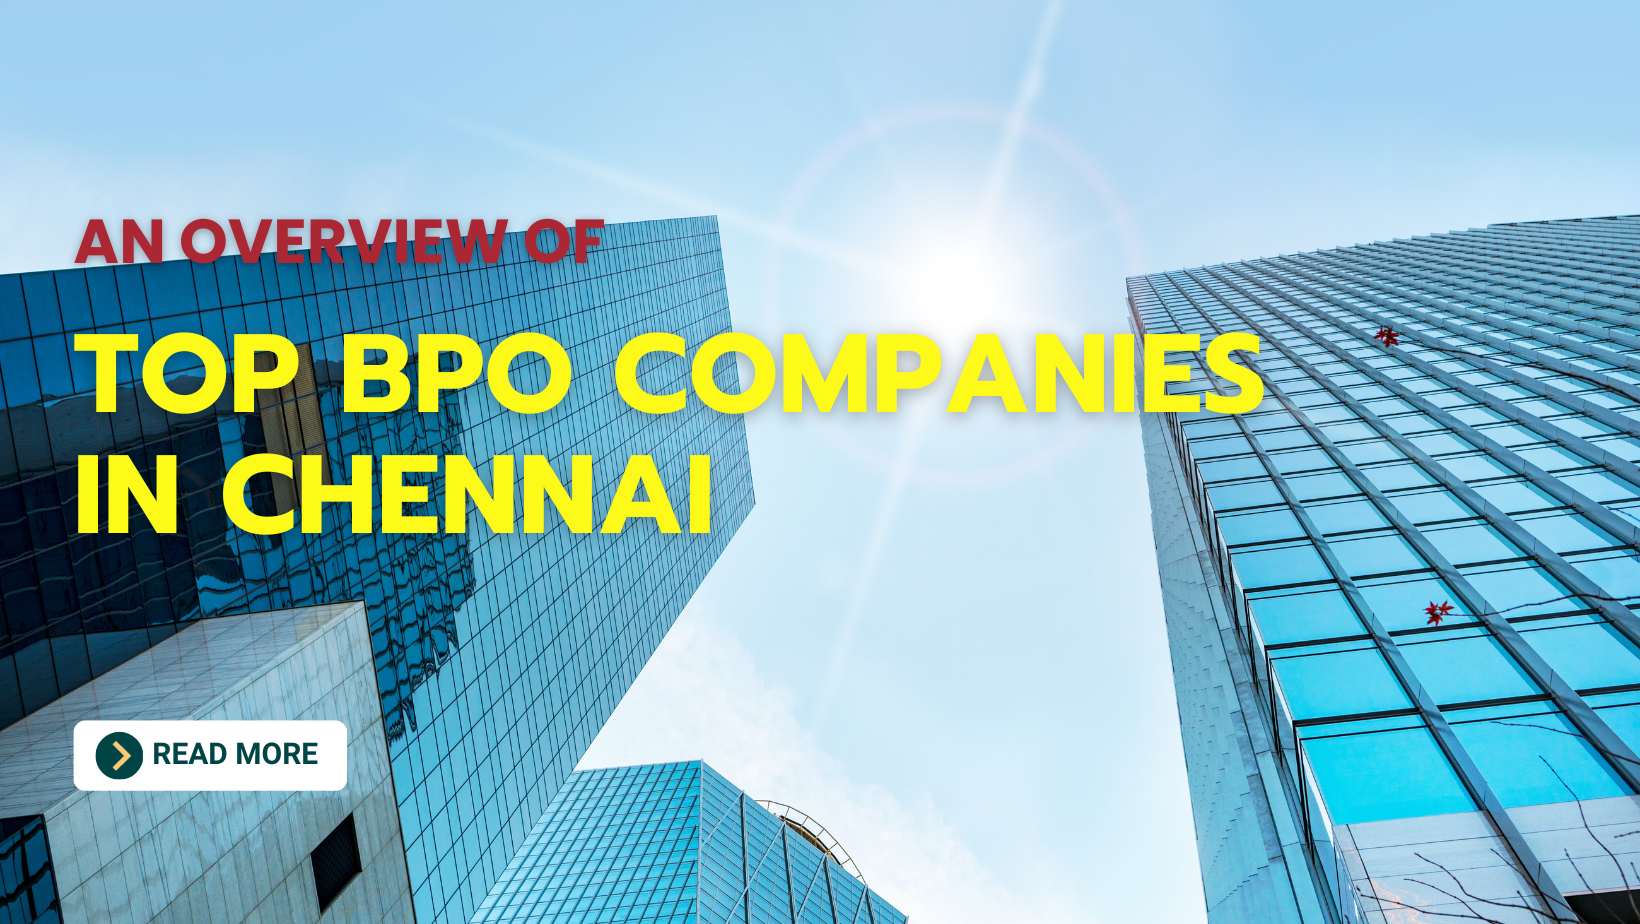 Top BPO Companies in Chennai